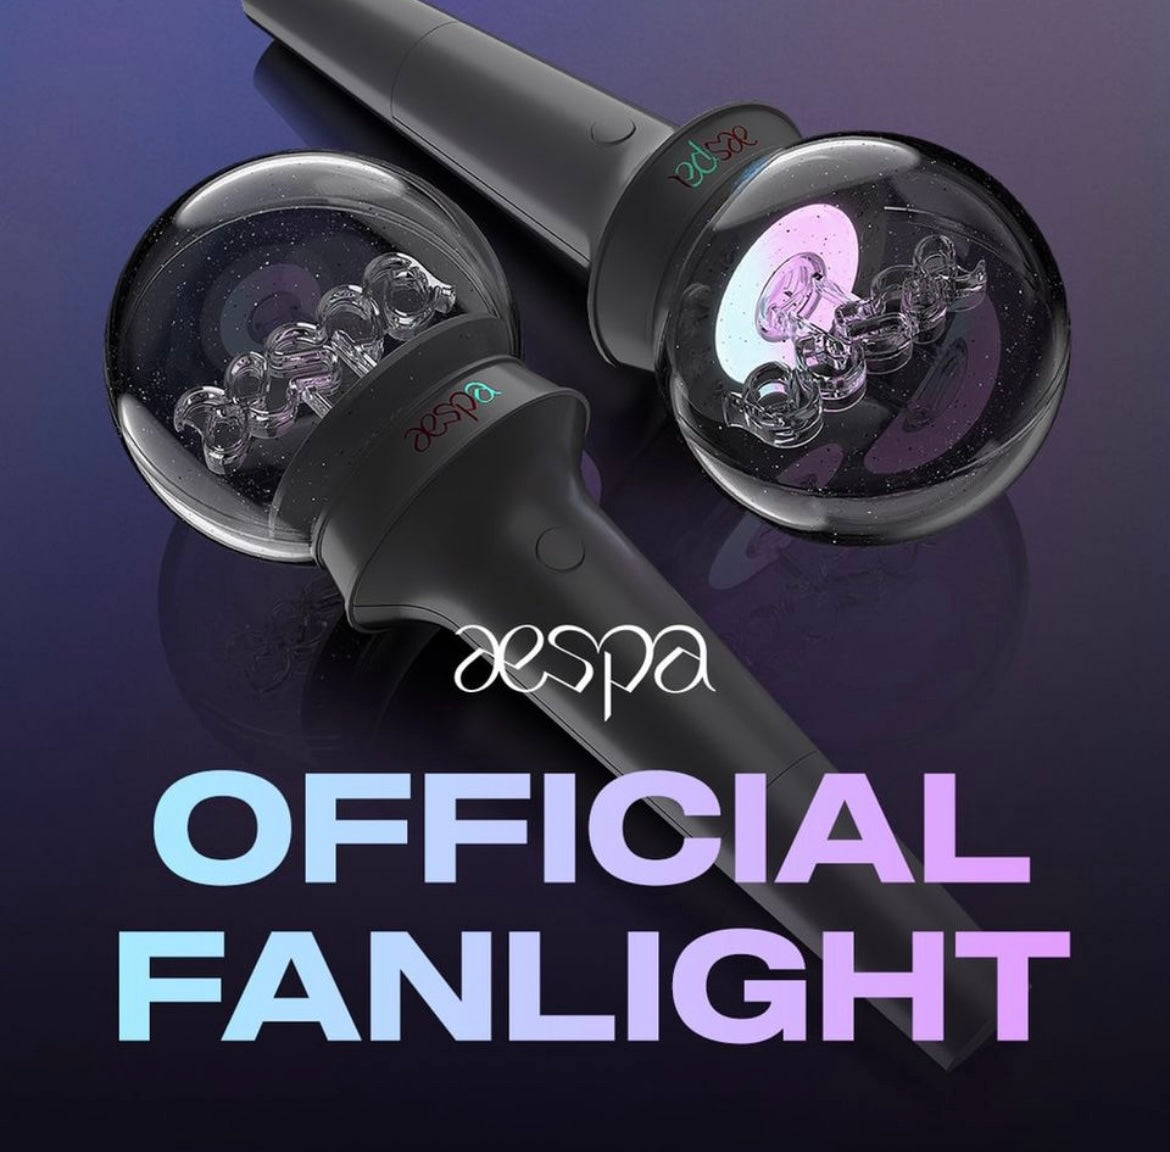 aespa • Official Fanlight